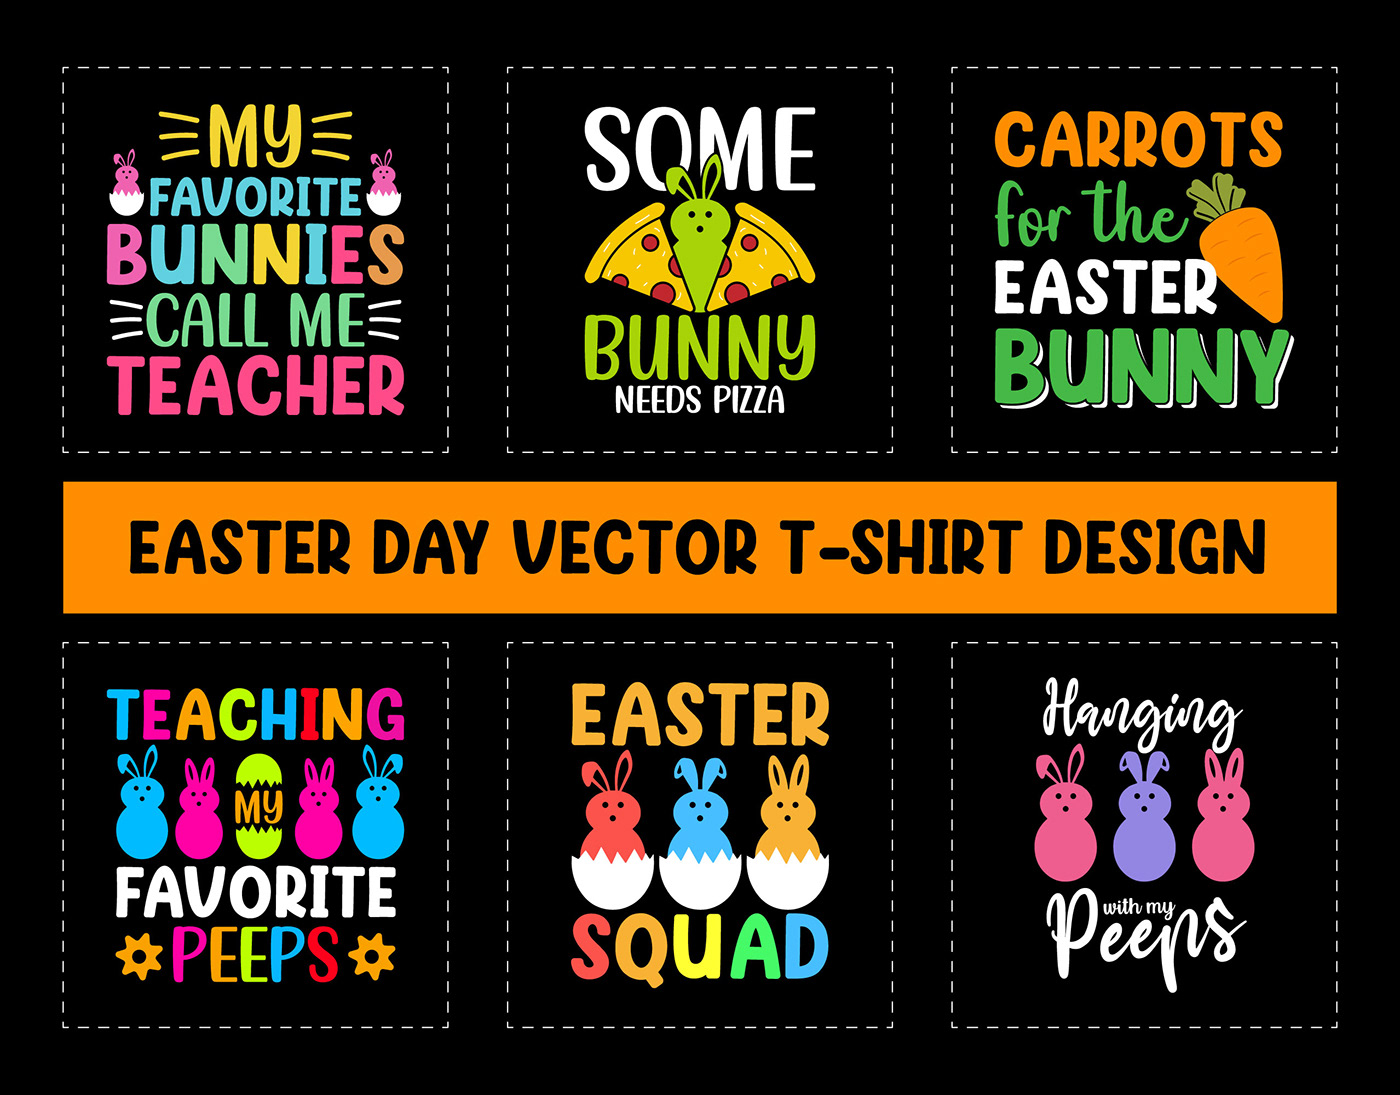 easter day tshirt, bunny, bunny tshirt, t shirt mockup, t shirt design ideas, free t-shirt, egg